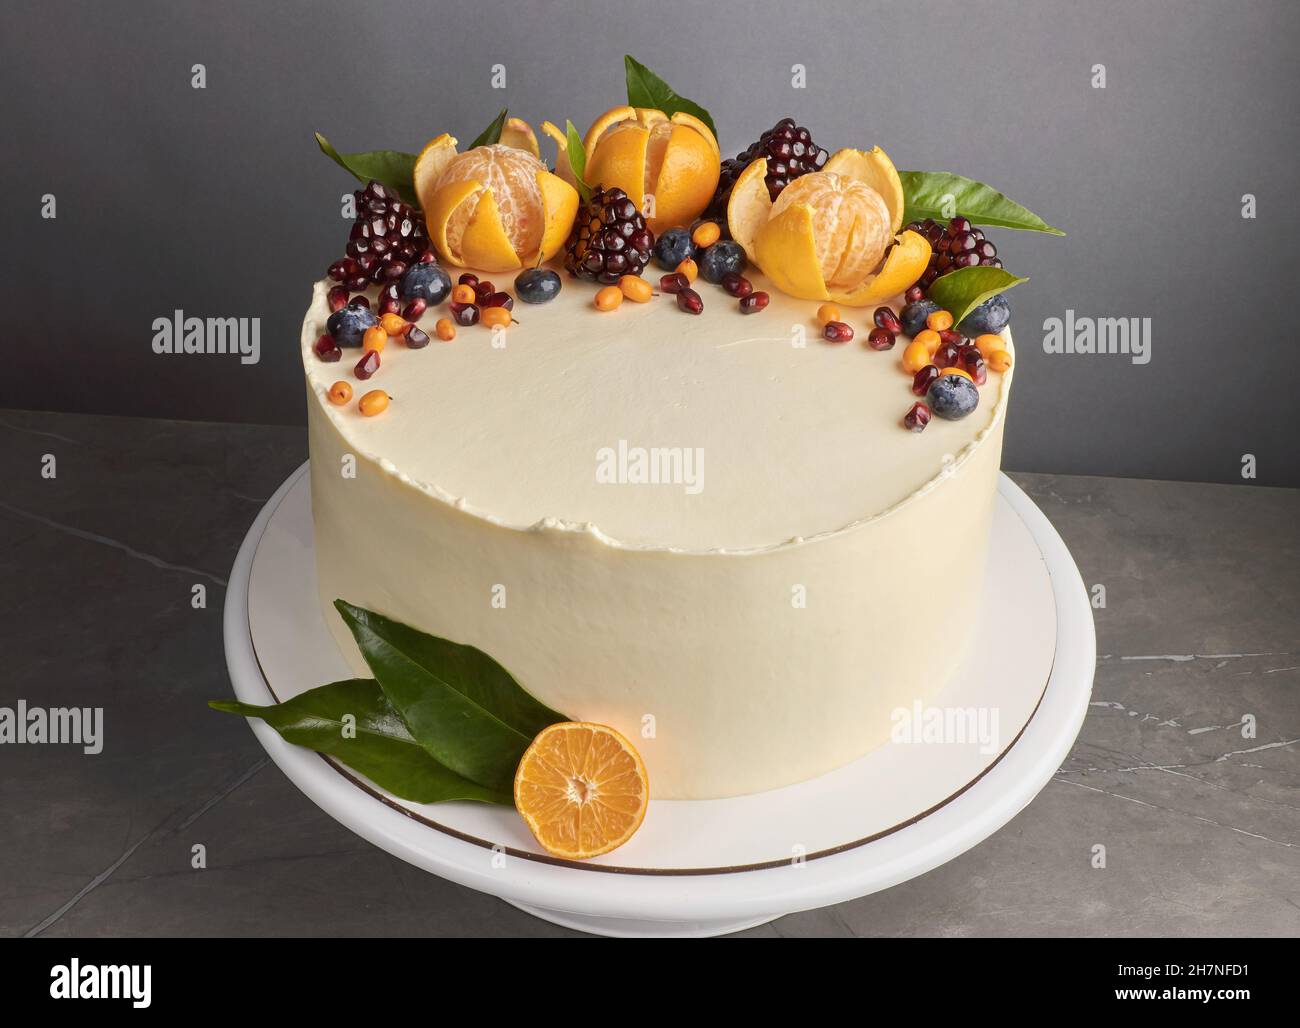 Leckere weiße Kuchen mit Granatapfel Orangen Blaubeere grauen Hintergrund dekoriert Stockfoto